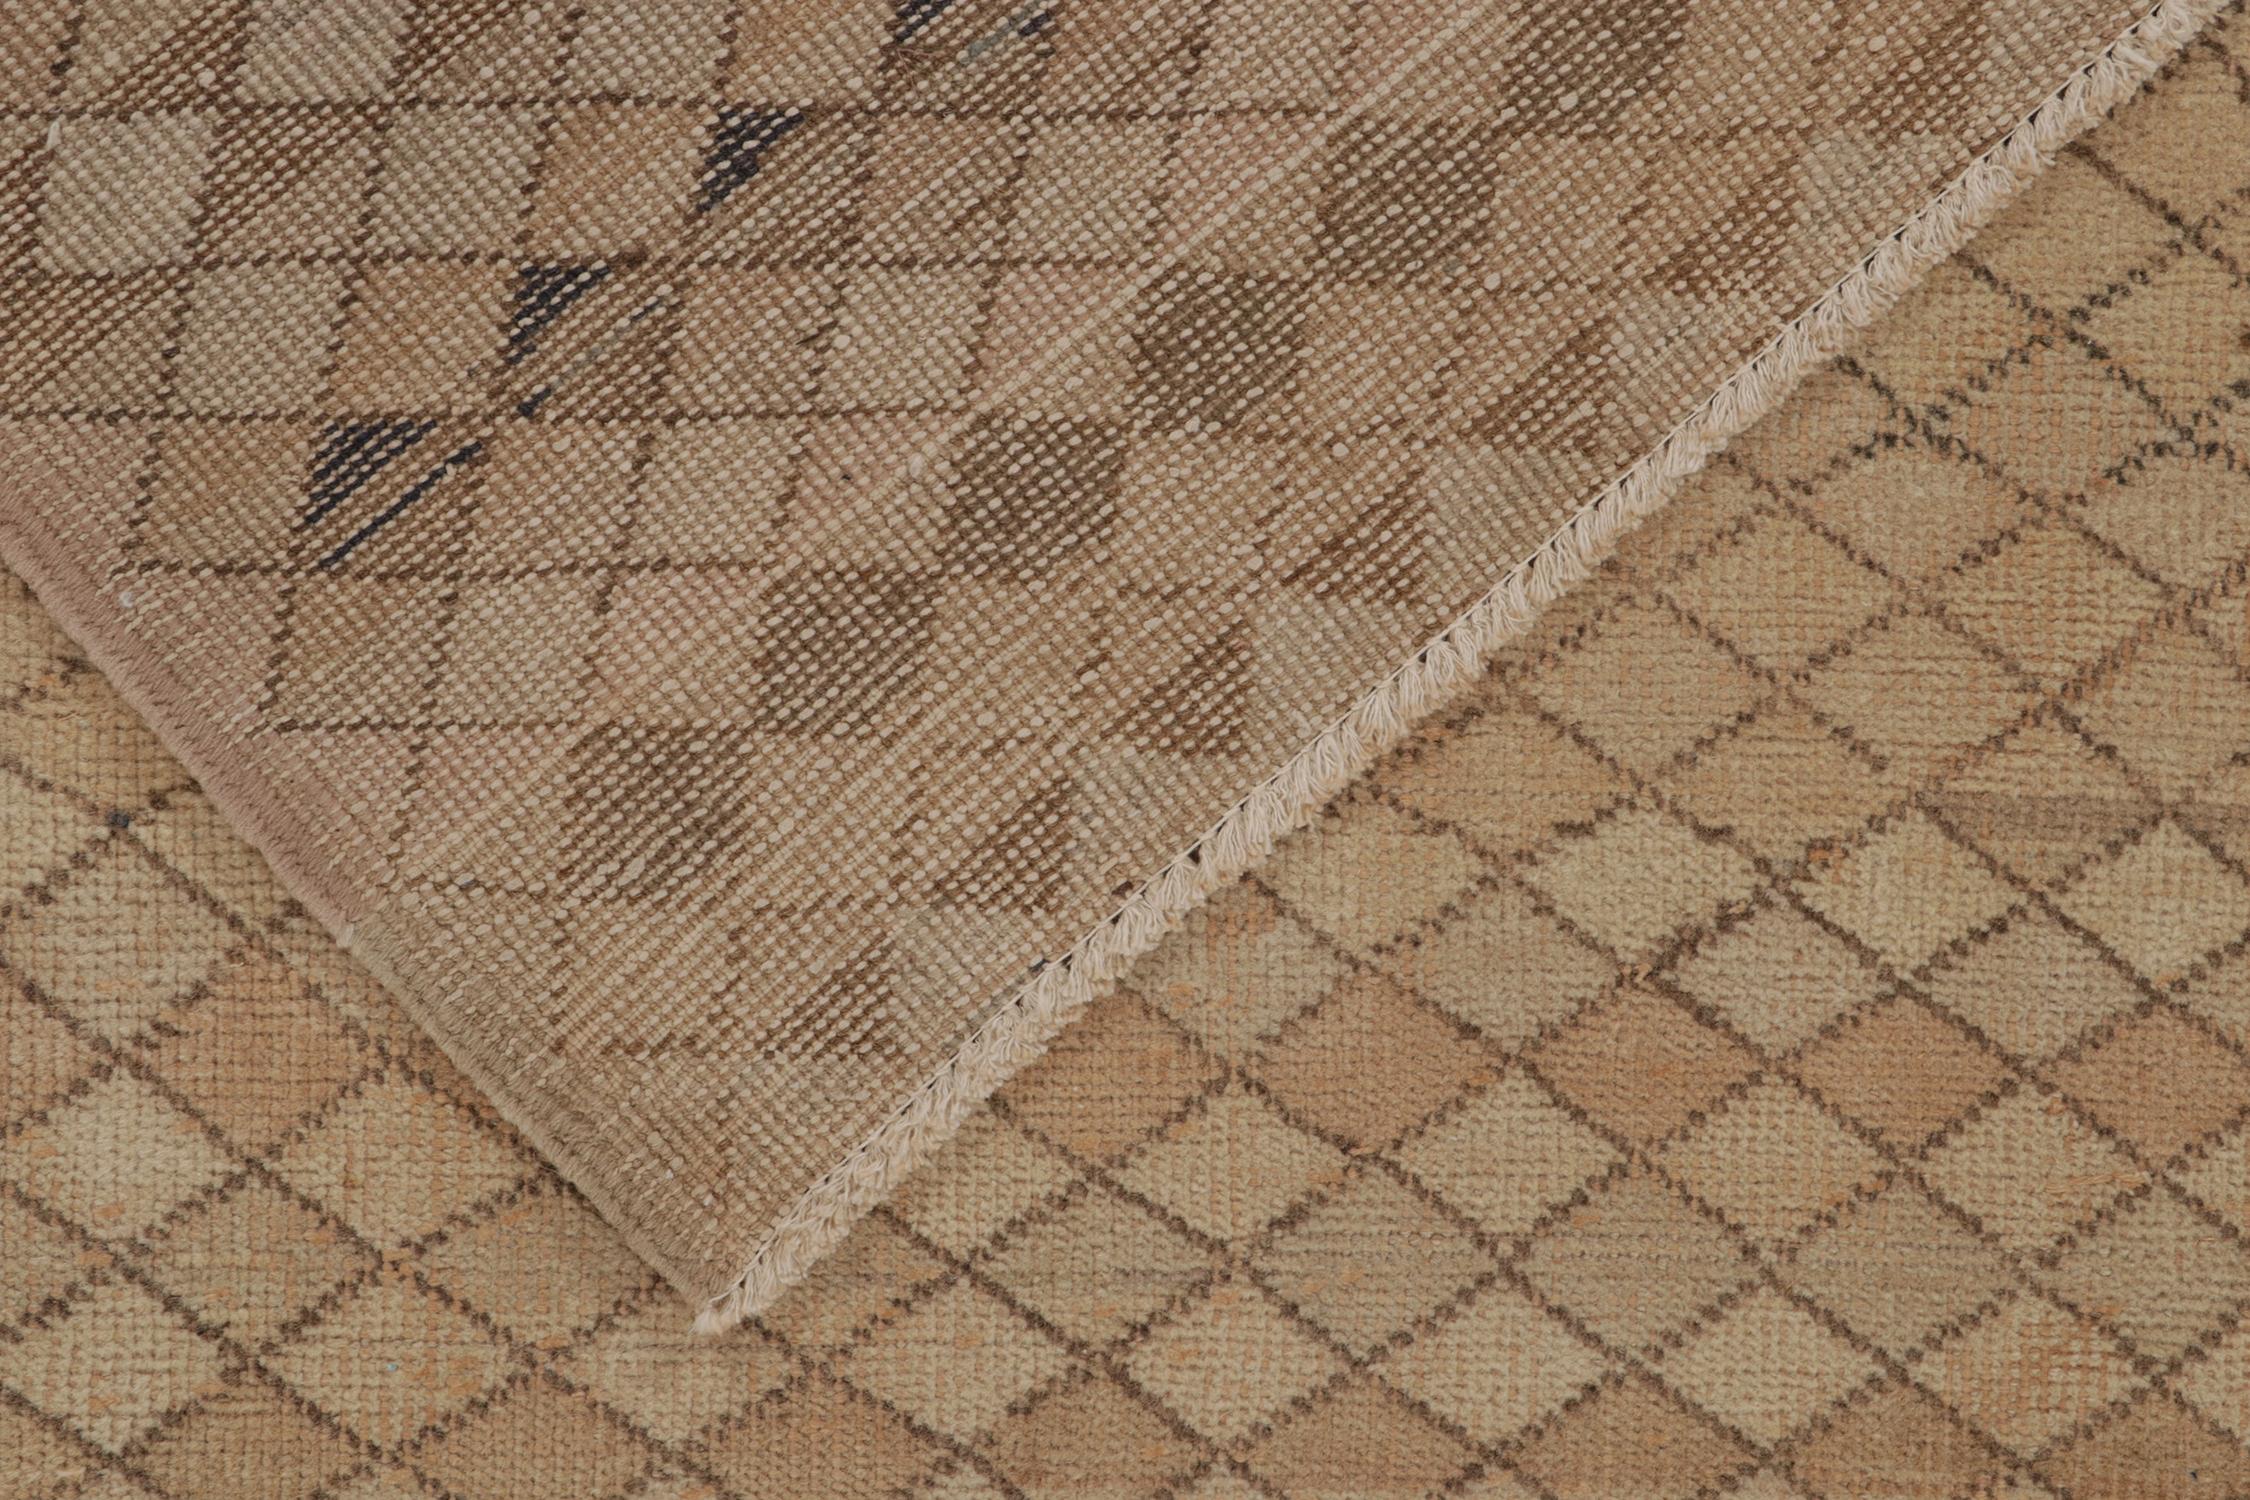 Wool Vintage Zeki Müren Rug in Beige-Brown Geometric Pattern, by Rug & Kilim For Sale